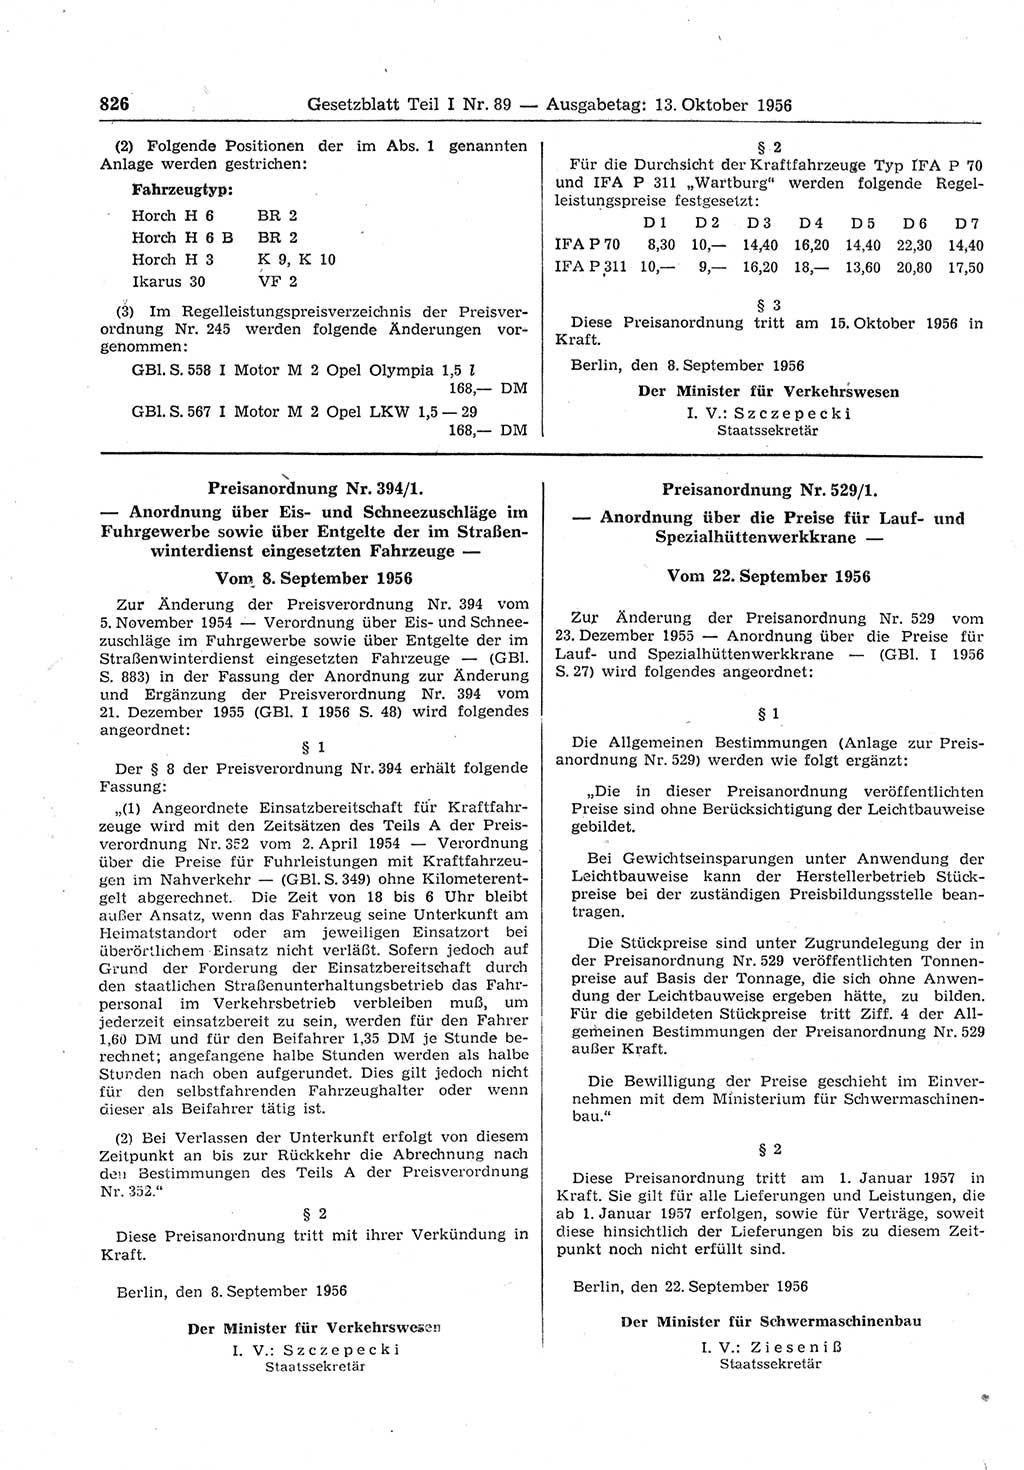 Gesetzblatt (GBl.) der Deutschen Demokratischen Republik (DDR) Teil Ⅰ 1956, Seite 826 (GBl. DDR Ⅰ 1956, S. 826)